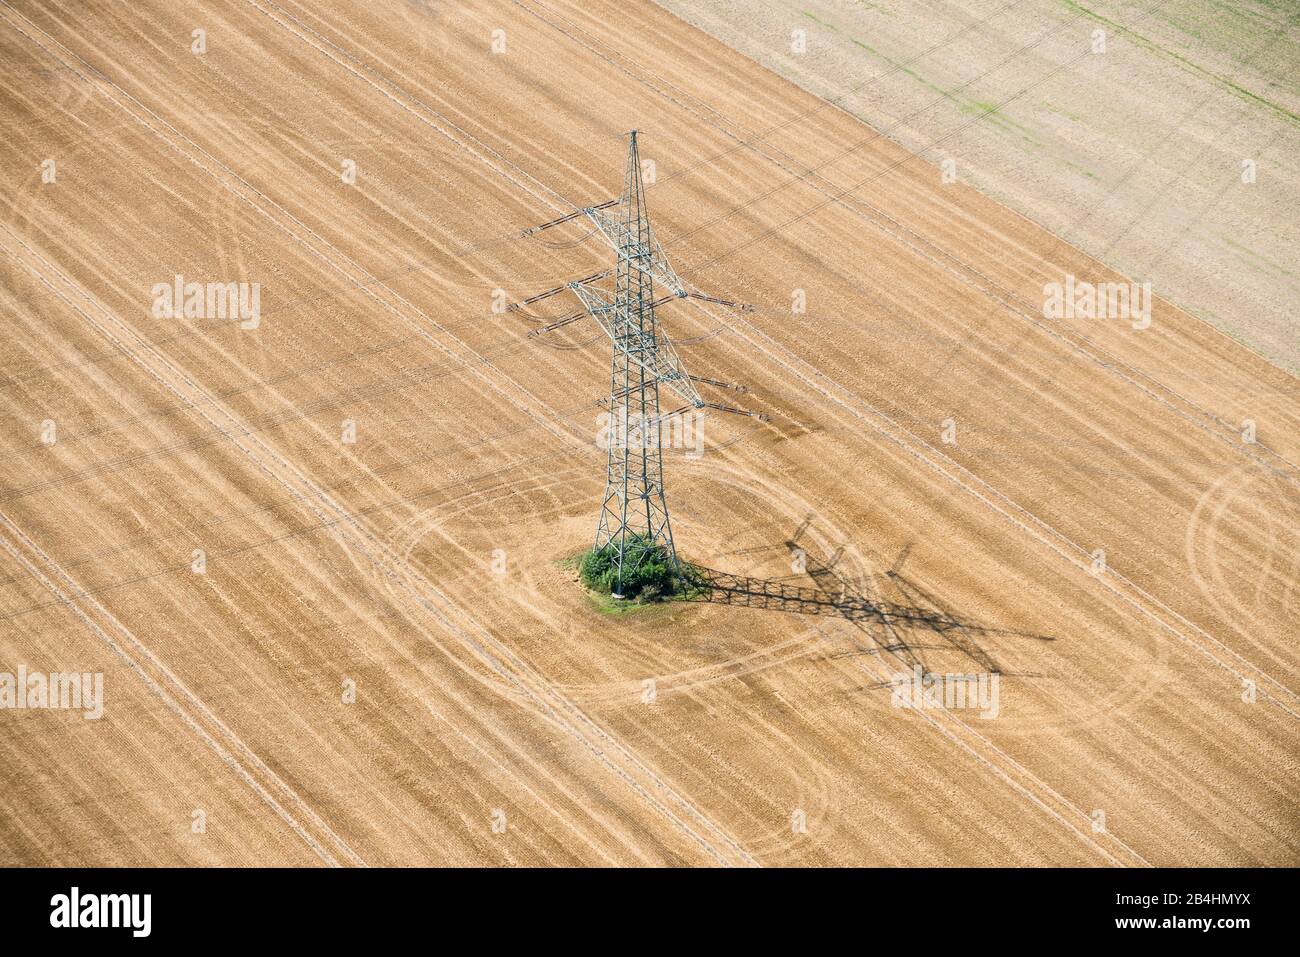 Luftaufnahme von einem Strommast auf abgeerntetem Getreidefeld Stock Photo